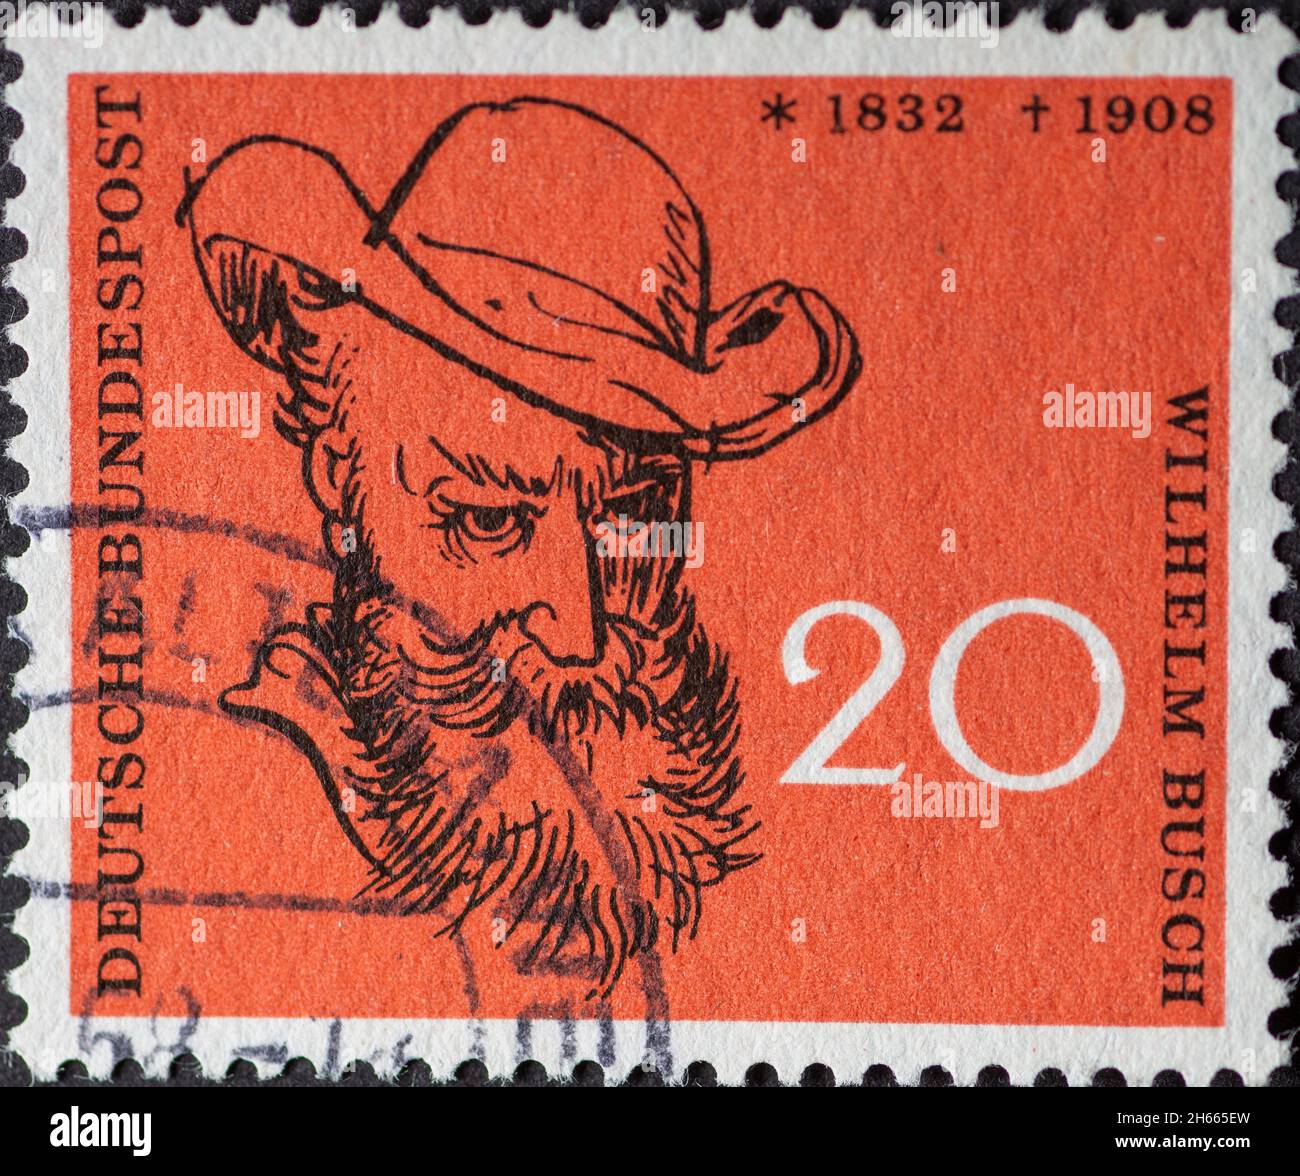 ALLEMAGNE - VERS 1958: Ce timbre-poste montre l'auteur Wilhelm Busch.L'occasion est le 50ème anniversaire de la mort de Wilhelm Busch Banque D'Images